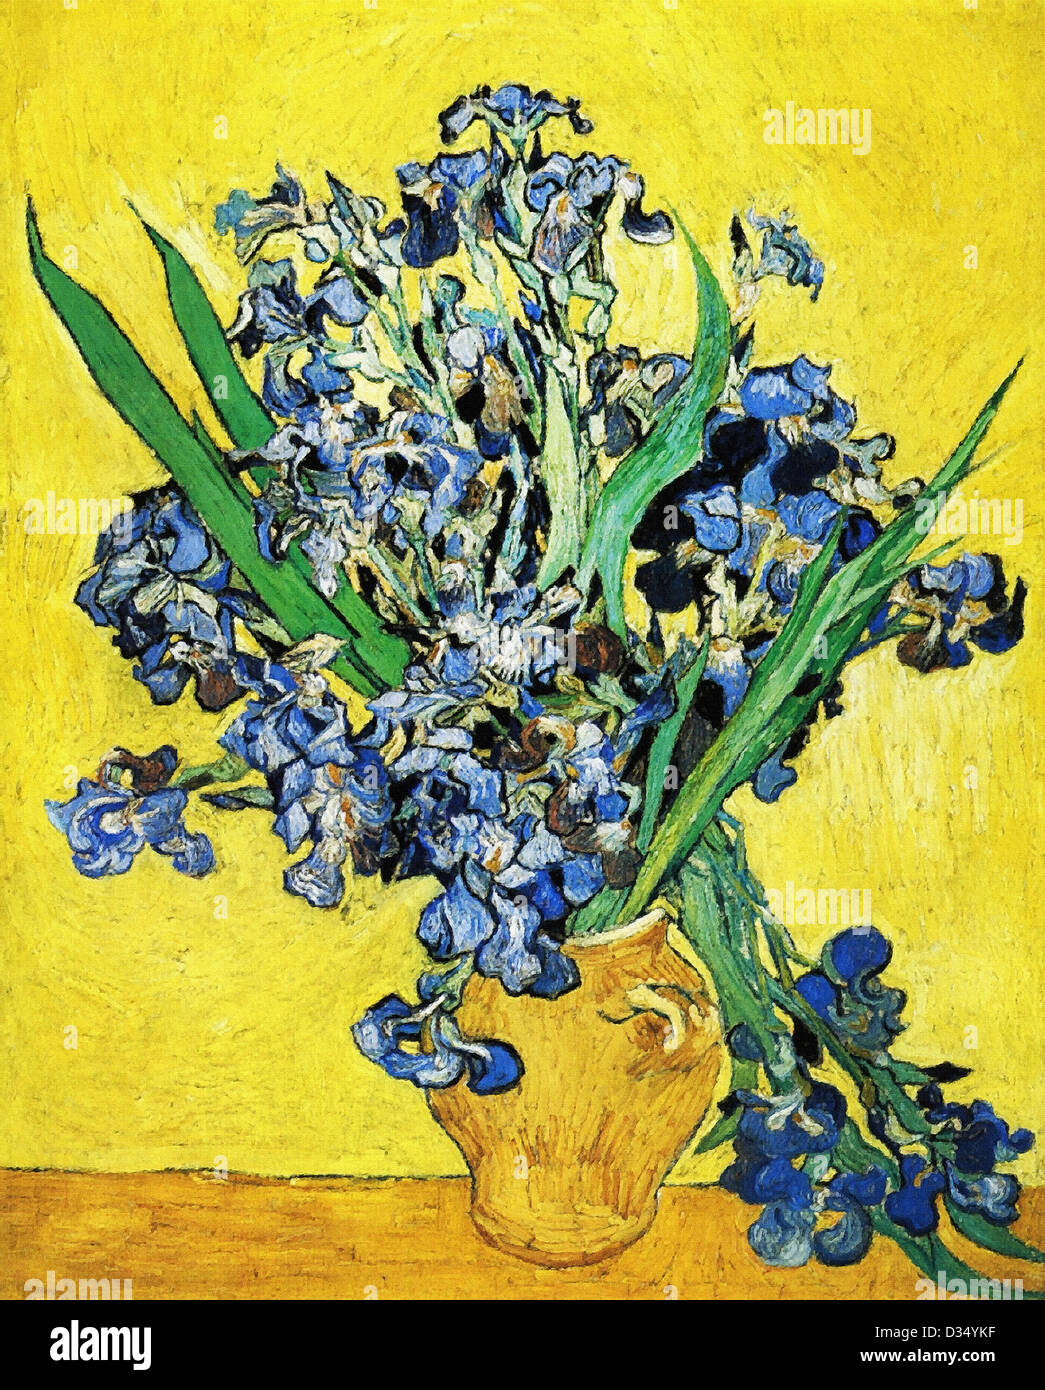 Vincent van Gogh, La vie toujours avec Iris. 1890. Le postimpressionnisme. Huile sur toile. Van Gogh Museum, Amsterdam, Pays-Bas. Banque D'Images